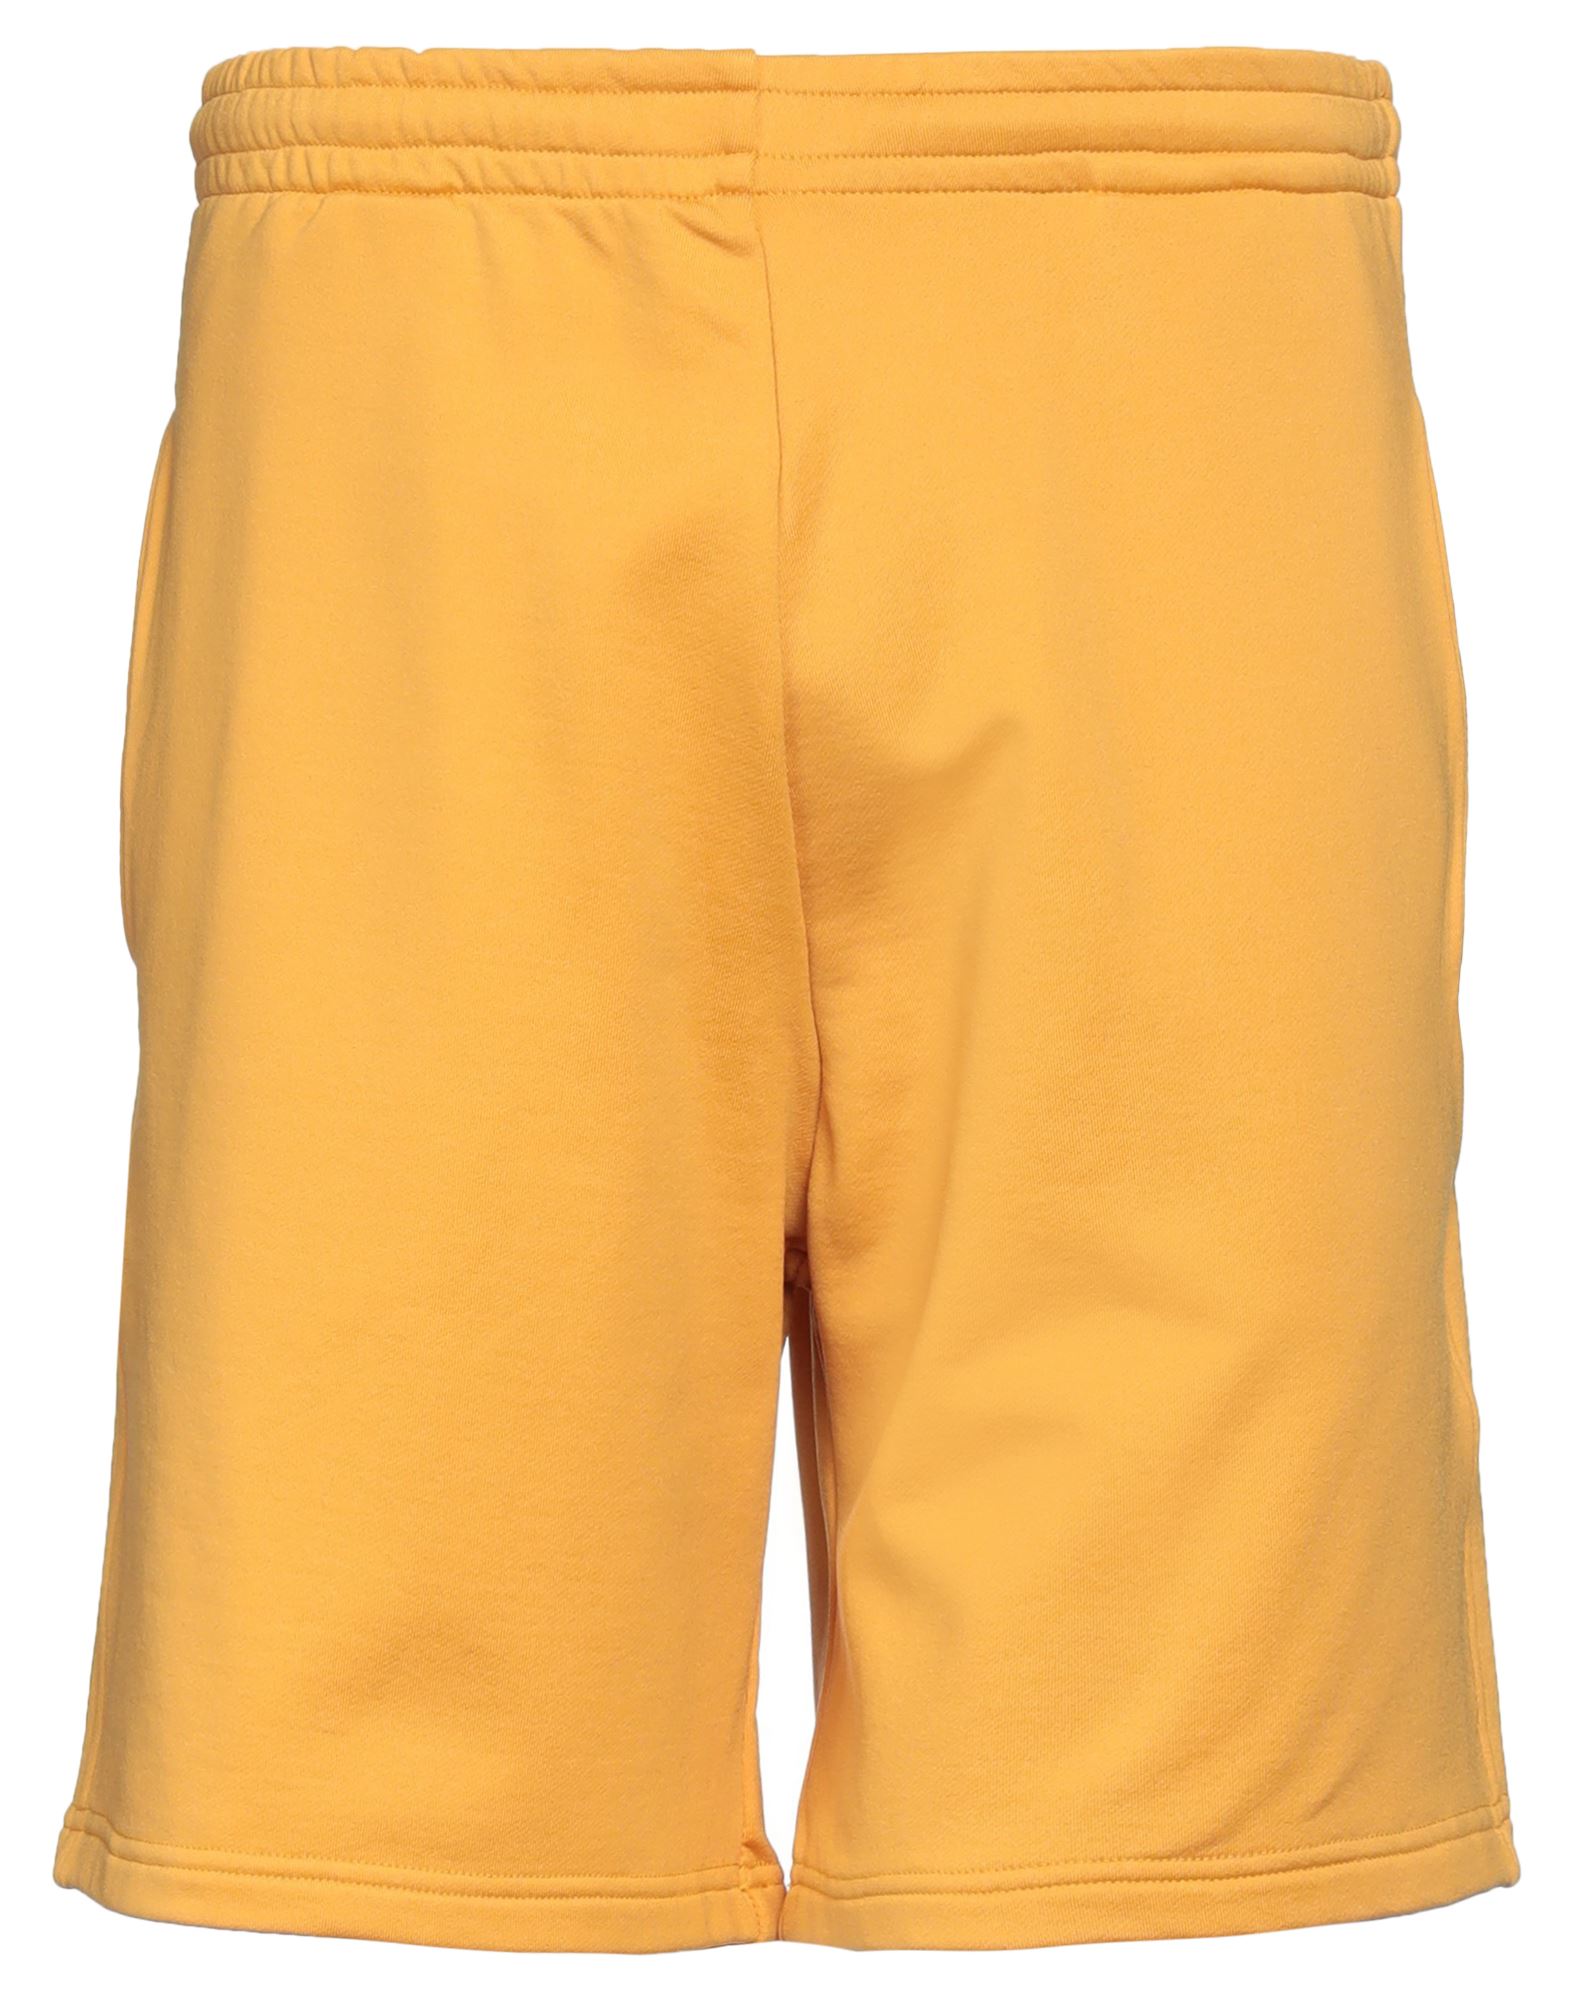 Cruna Man Shorts & Bermuda Shorts Mandarin Size L Cotton